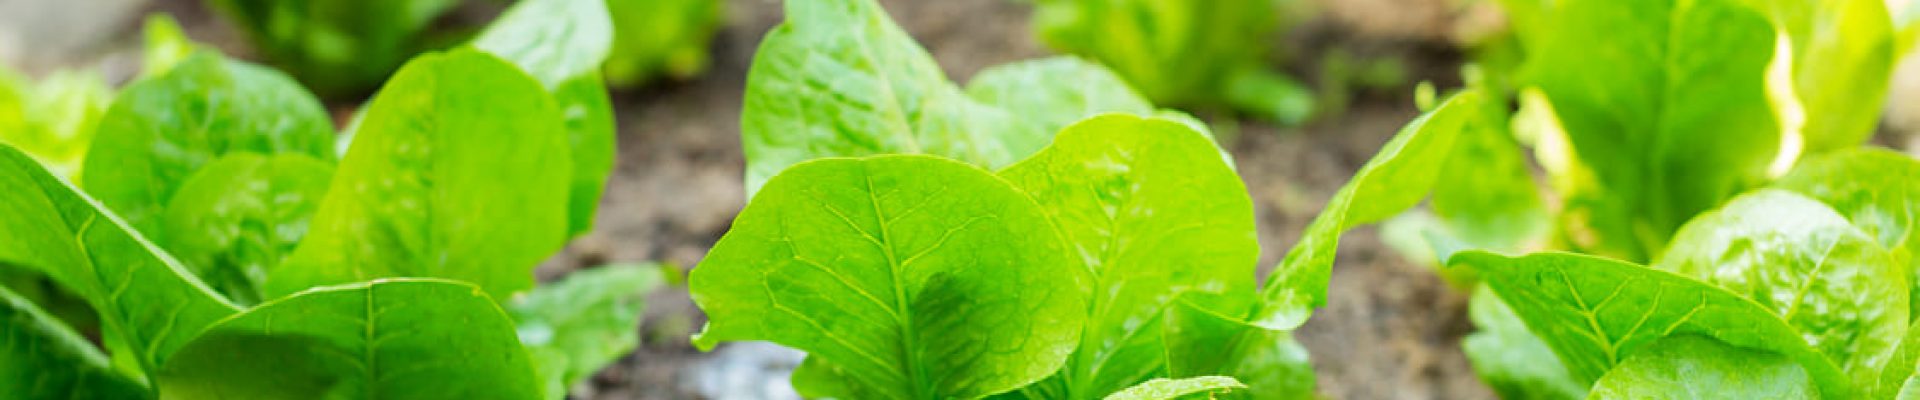 fertilizer-of-lettuce-field-2021-04-05-05-32-41-utc (1)